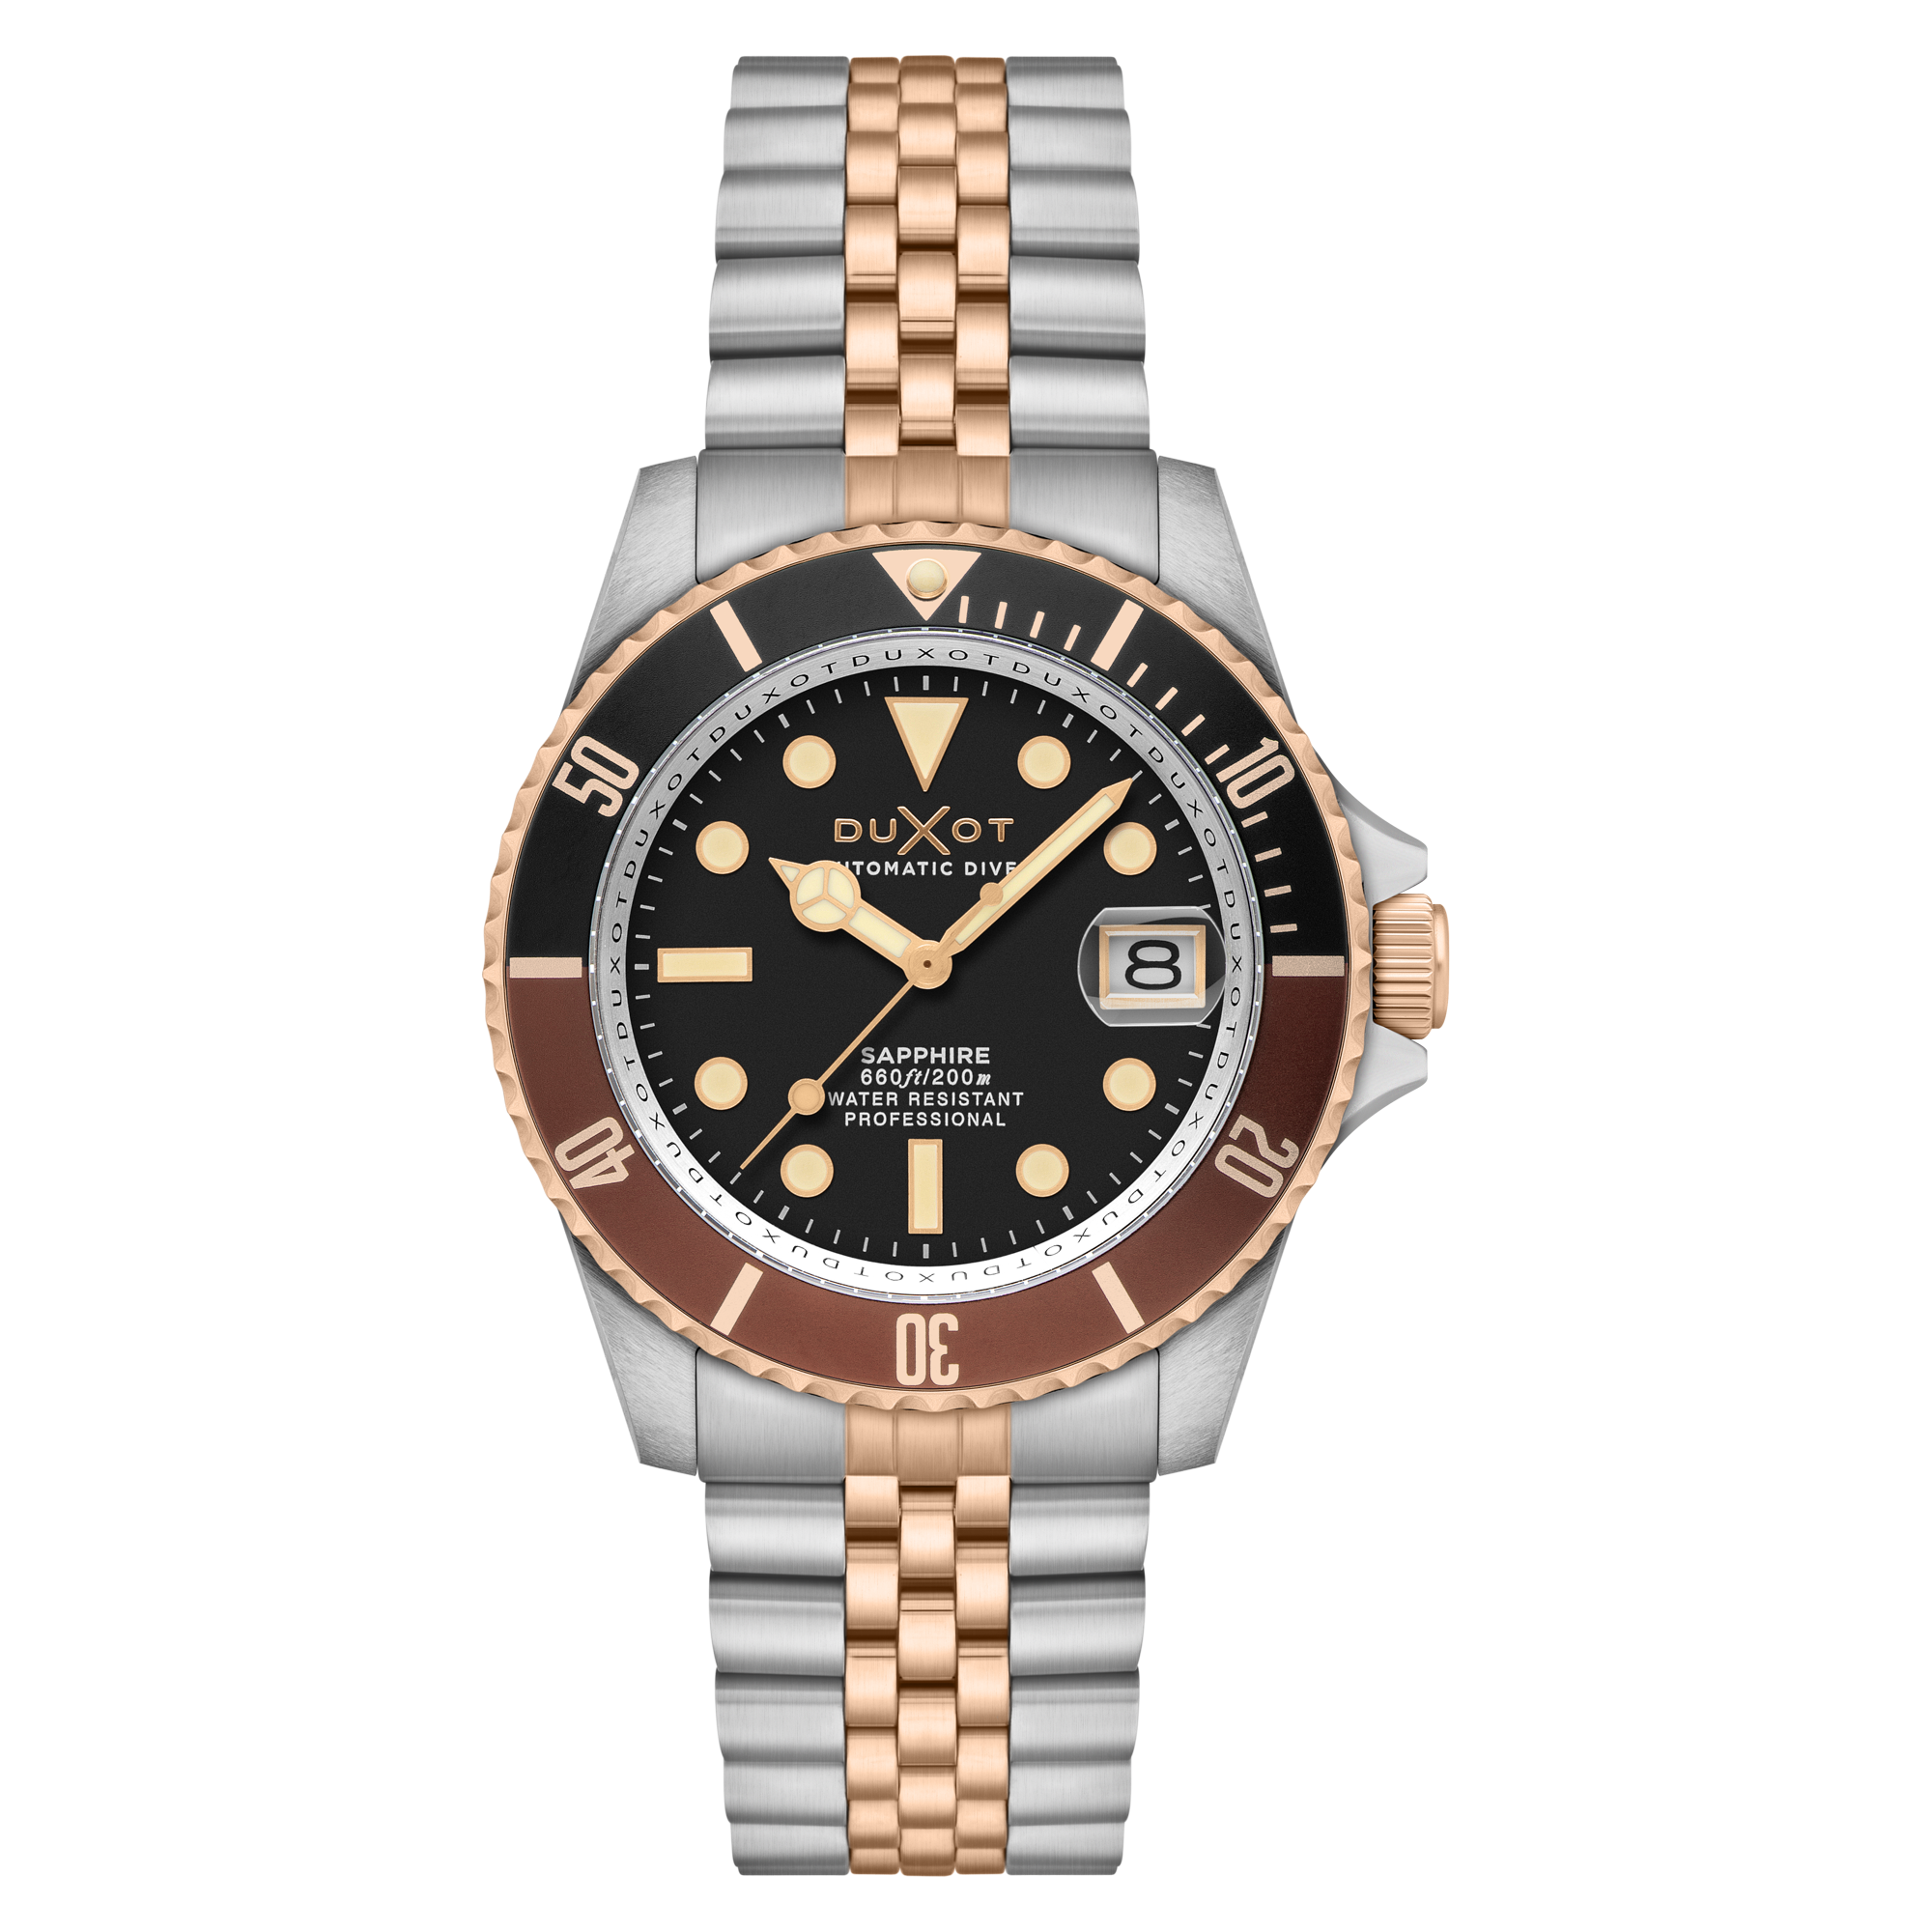 Duxot Atlantica Diver Automatic Two Tone Brown Men's Watch DX-2057-66